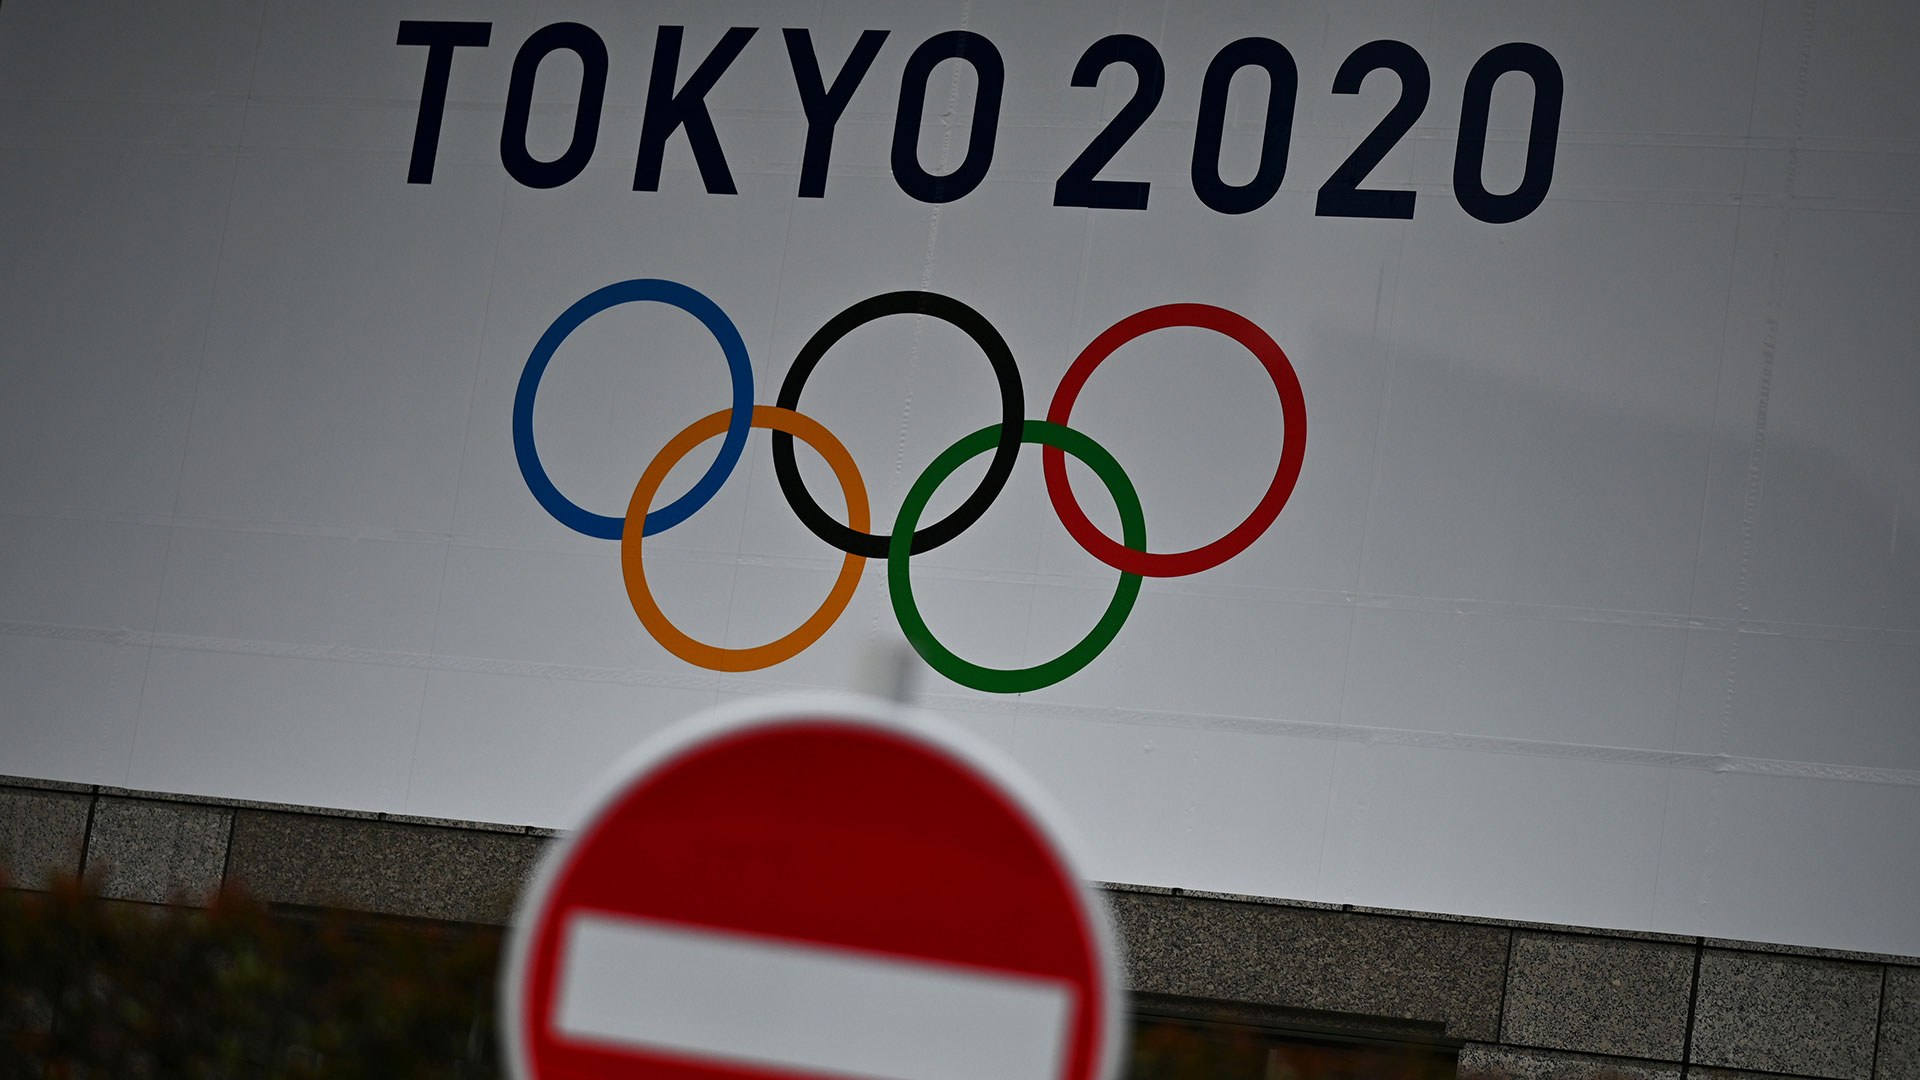 El COI estudia aplazar los Juegos Olímpicos de Tokio 2020